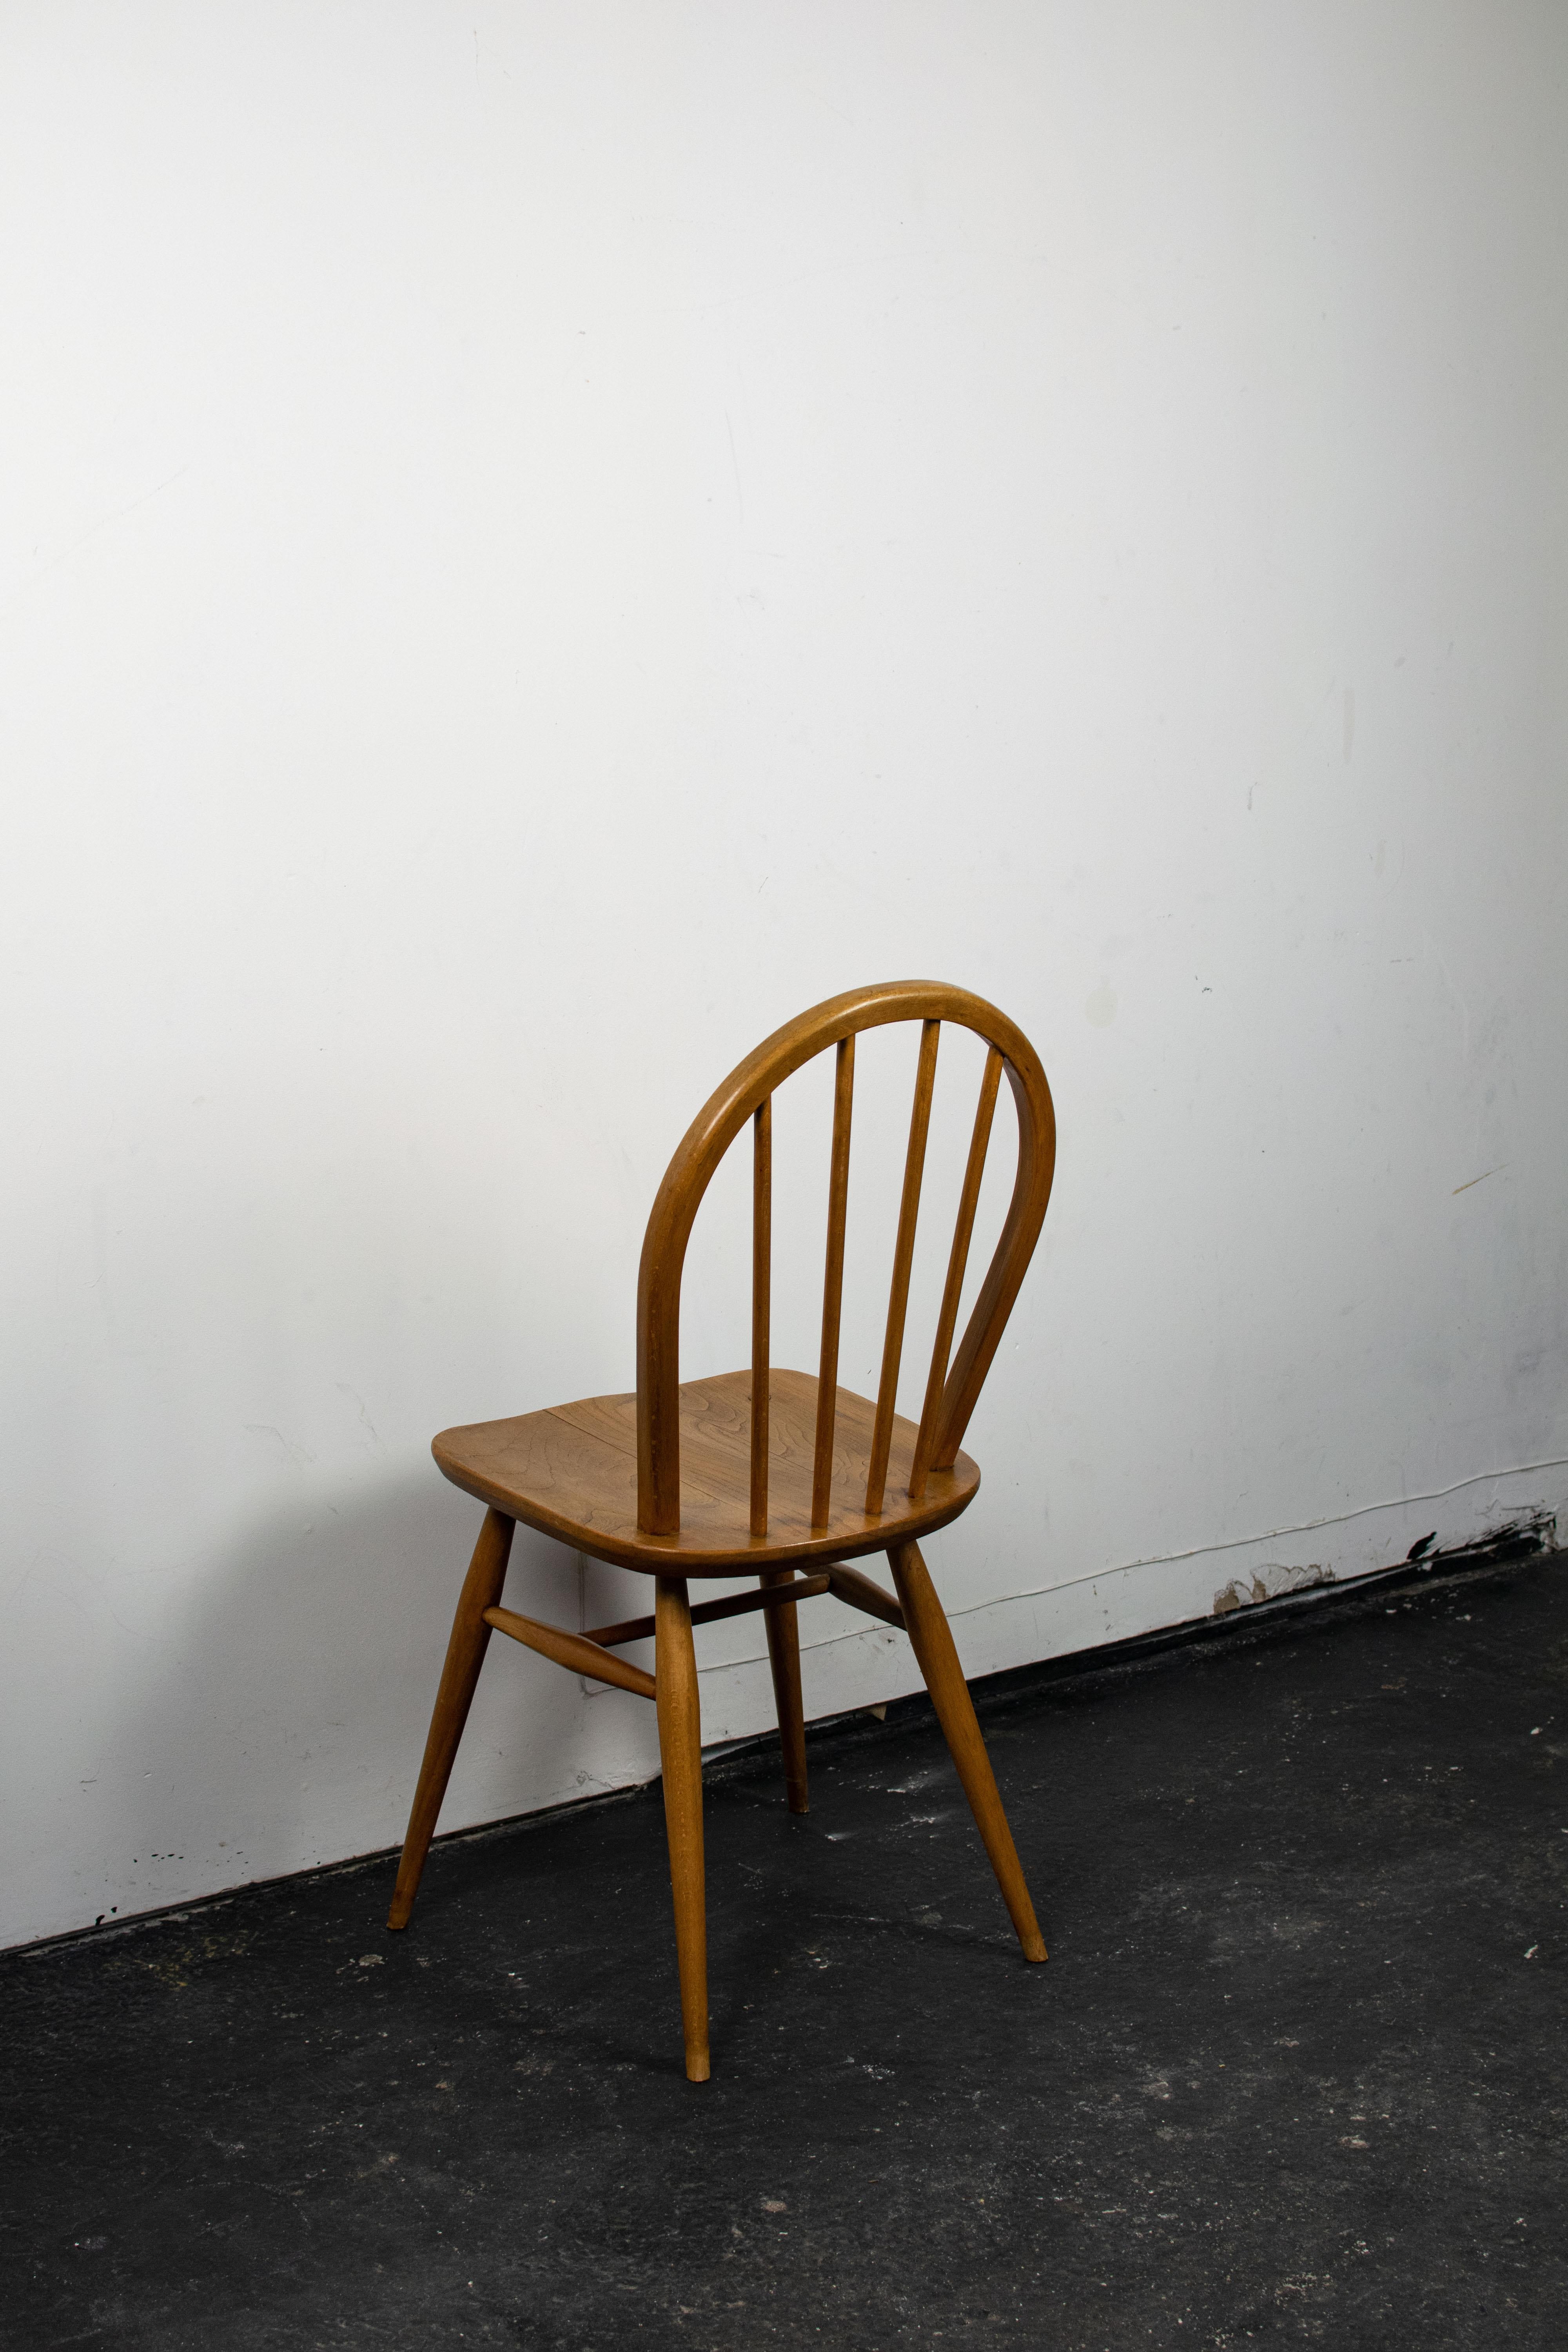 Chaise Ercol modèle 400 de salle à manger en bois de hêtre. Les meubles Ercol sont réputés pour leur qualité et leur durée dans le temps. Le bois a été légèrement poncée, nettoyer puis cirer afin de lui redonner toute sa splendeur d'antan. 4 chaises